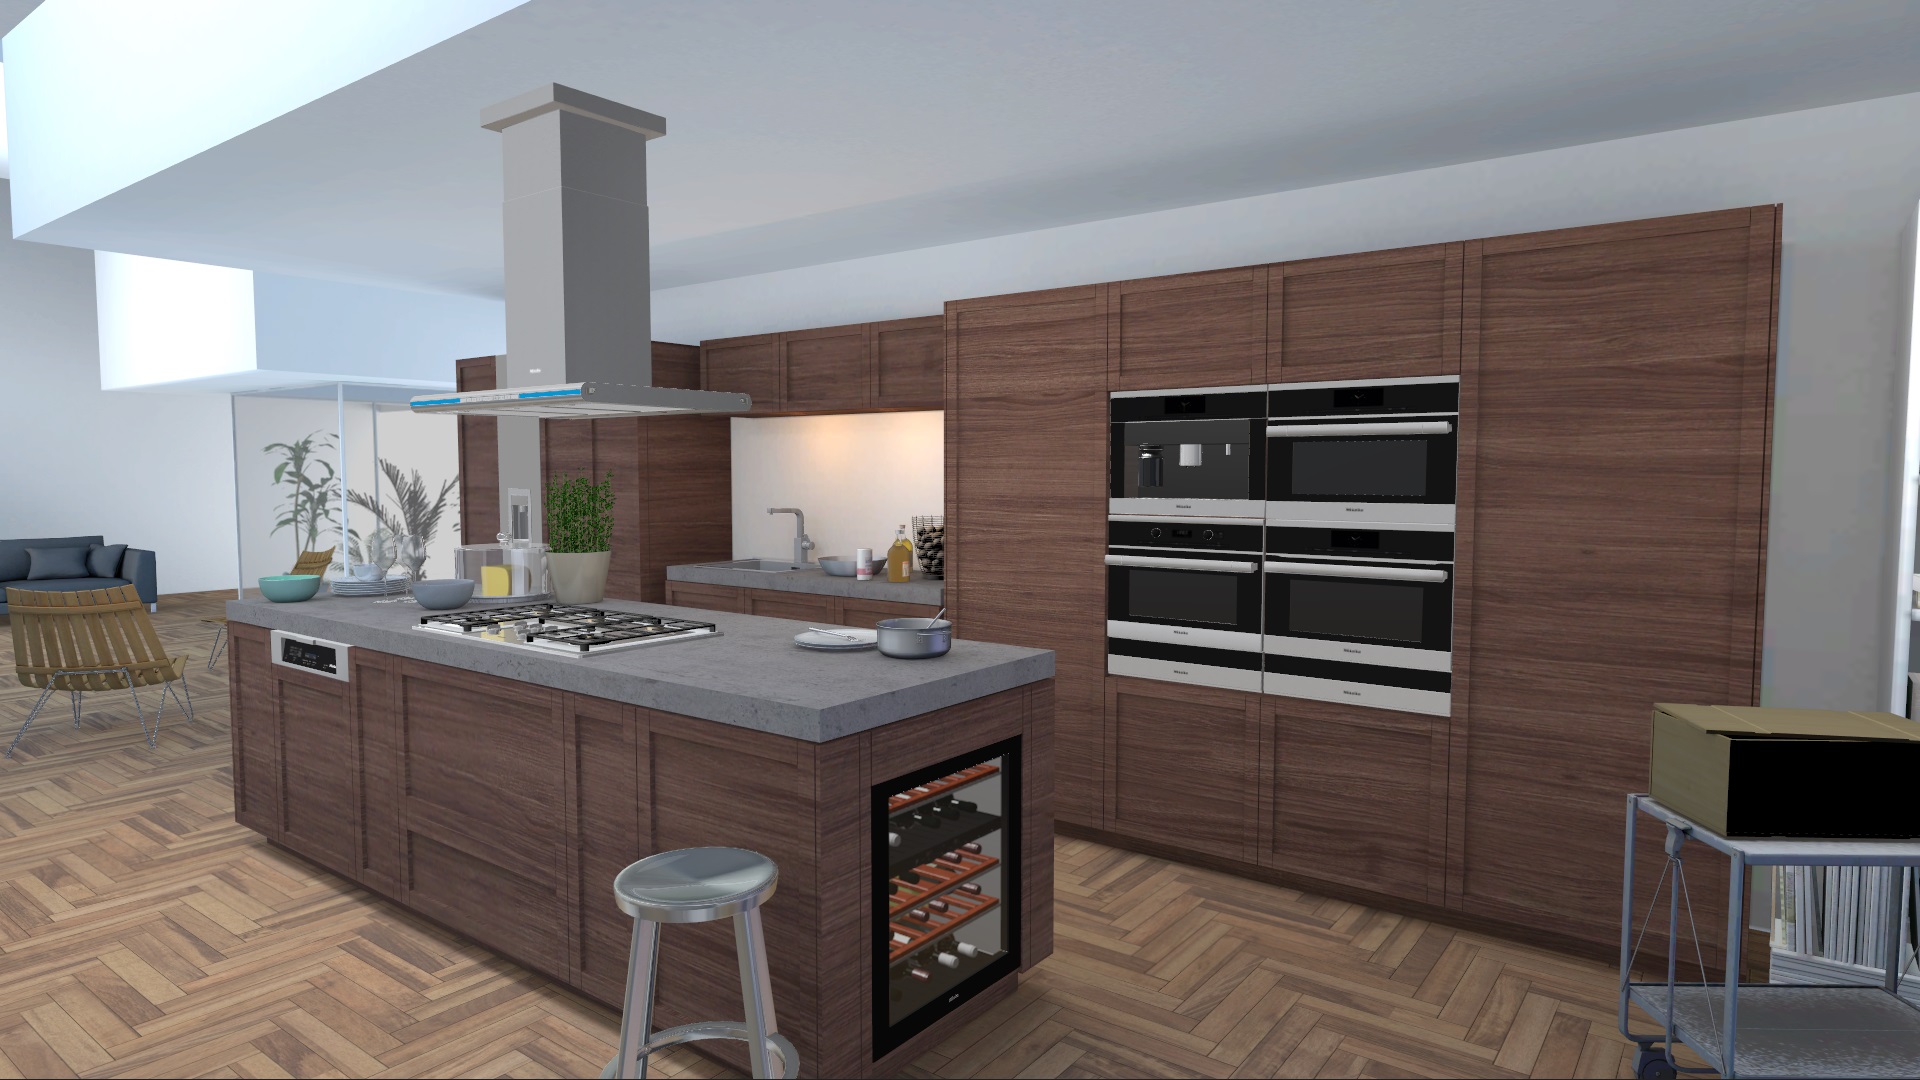 miele kitchen appliance visualizer kitchen with parquet floor